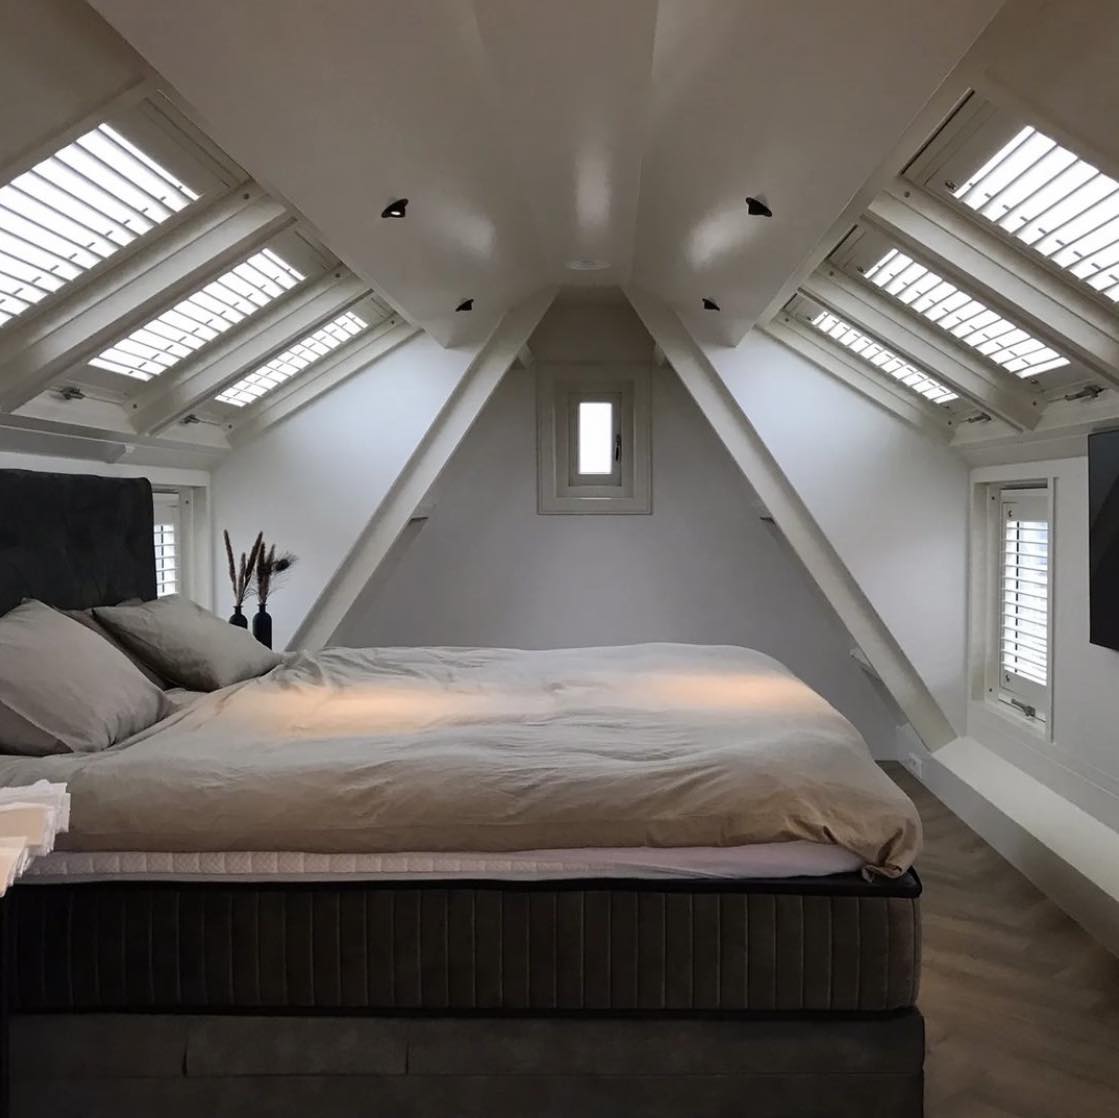 Foto: Wonennl LUXbox dakserre voor slaapkamer